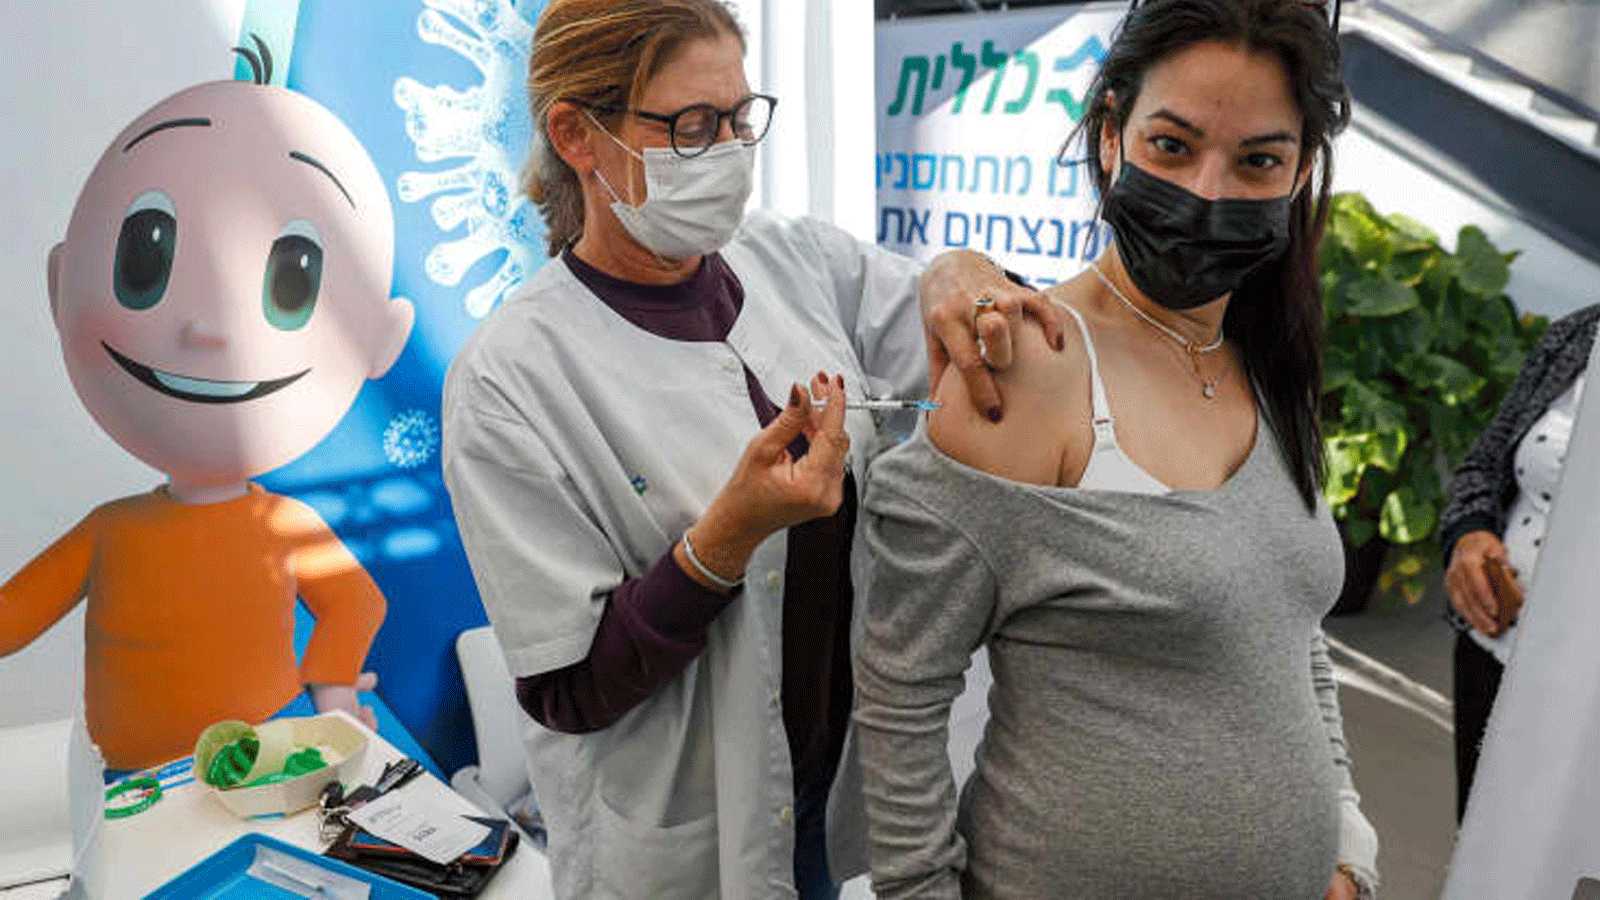  عاملٌ صحي يعطي جرعة من لقاح فايزر-بيونتيك COVID-19 المضاد لكورونا لامرأة حامل في خدمات الصحة كلاليت، في مدينة تل أبيب/ إسرائيل. 23 كانون الثاني/ يناير 2021